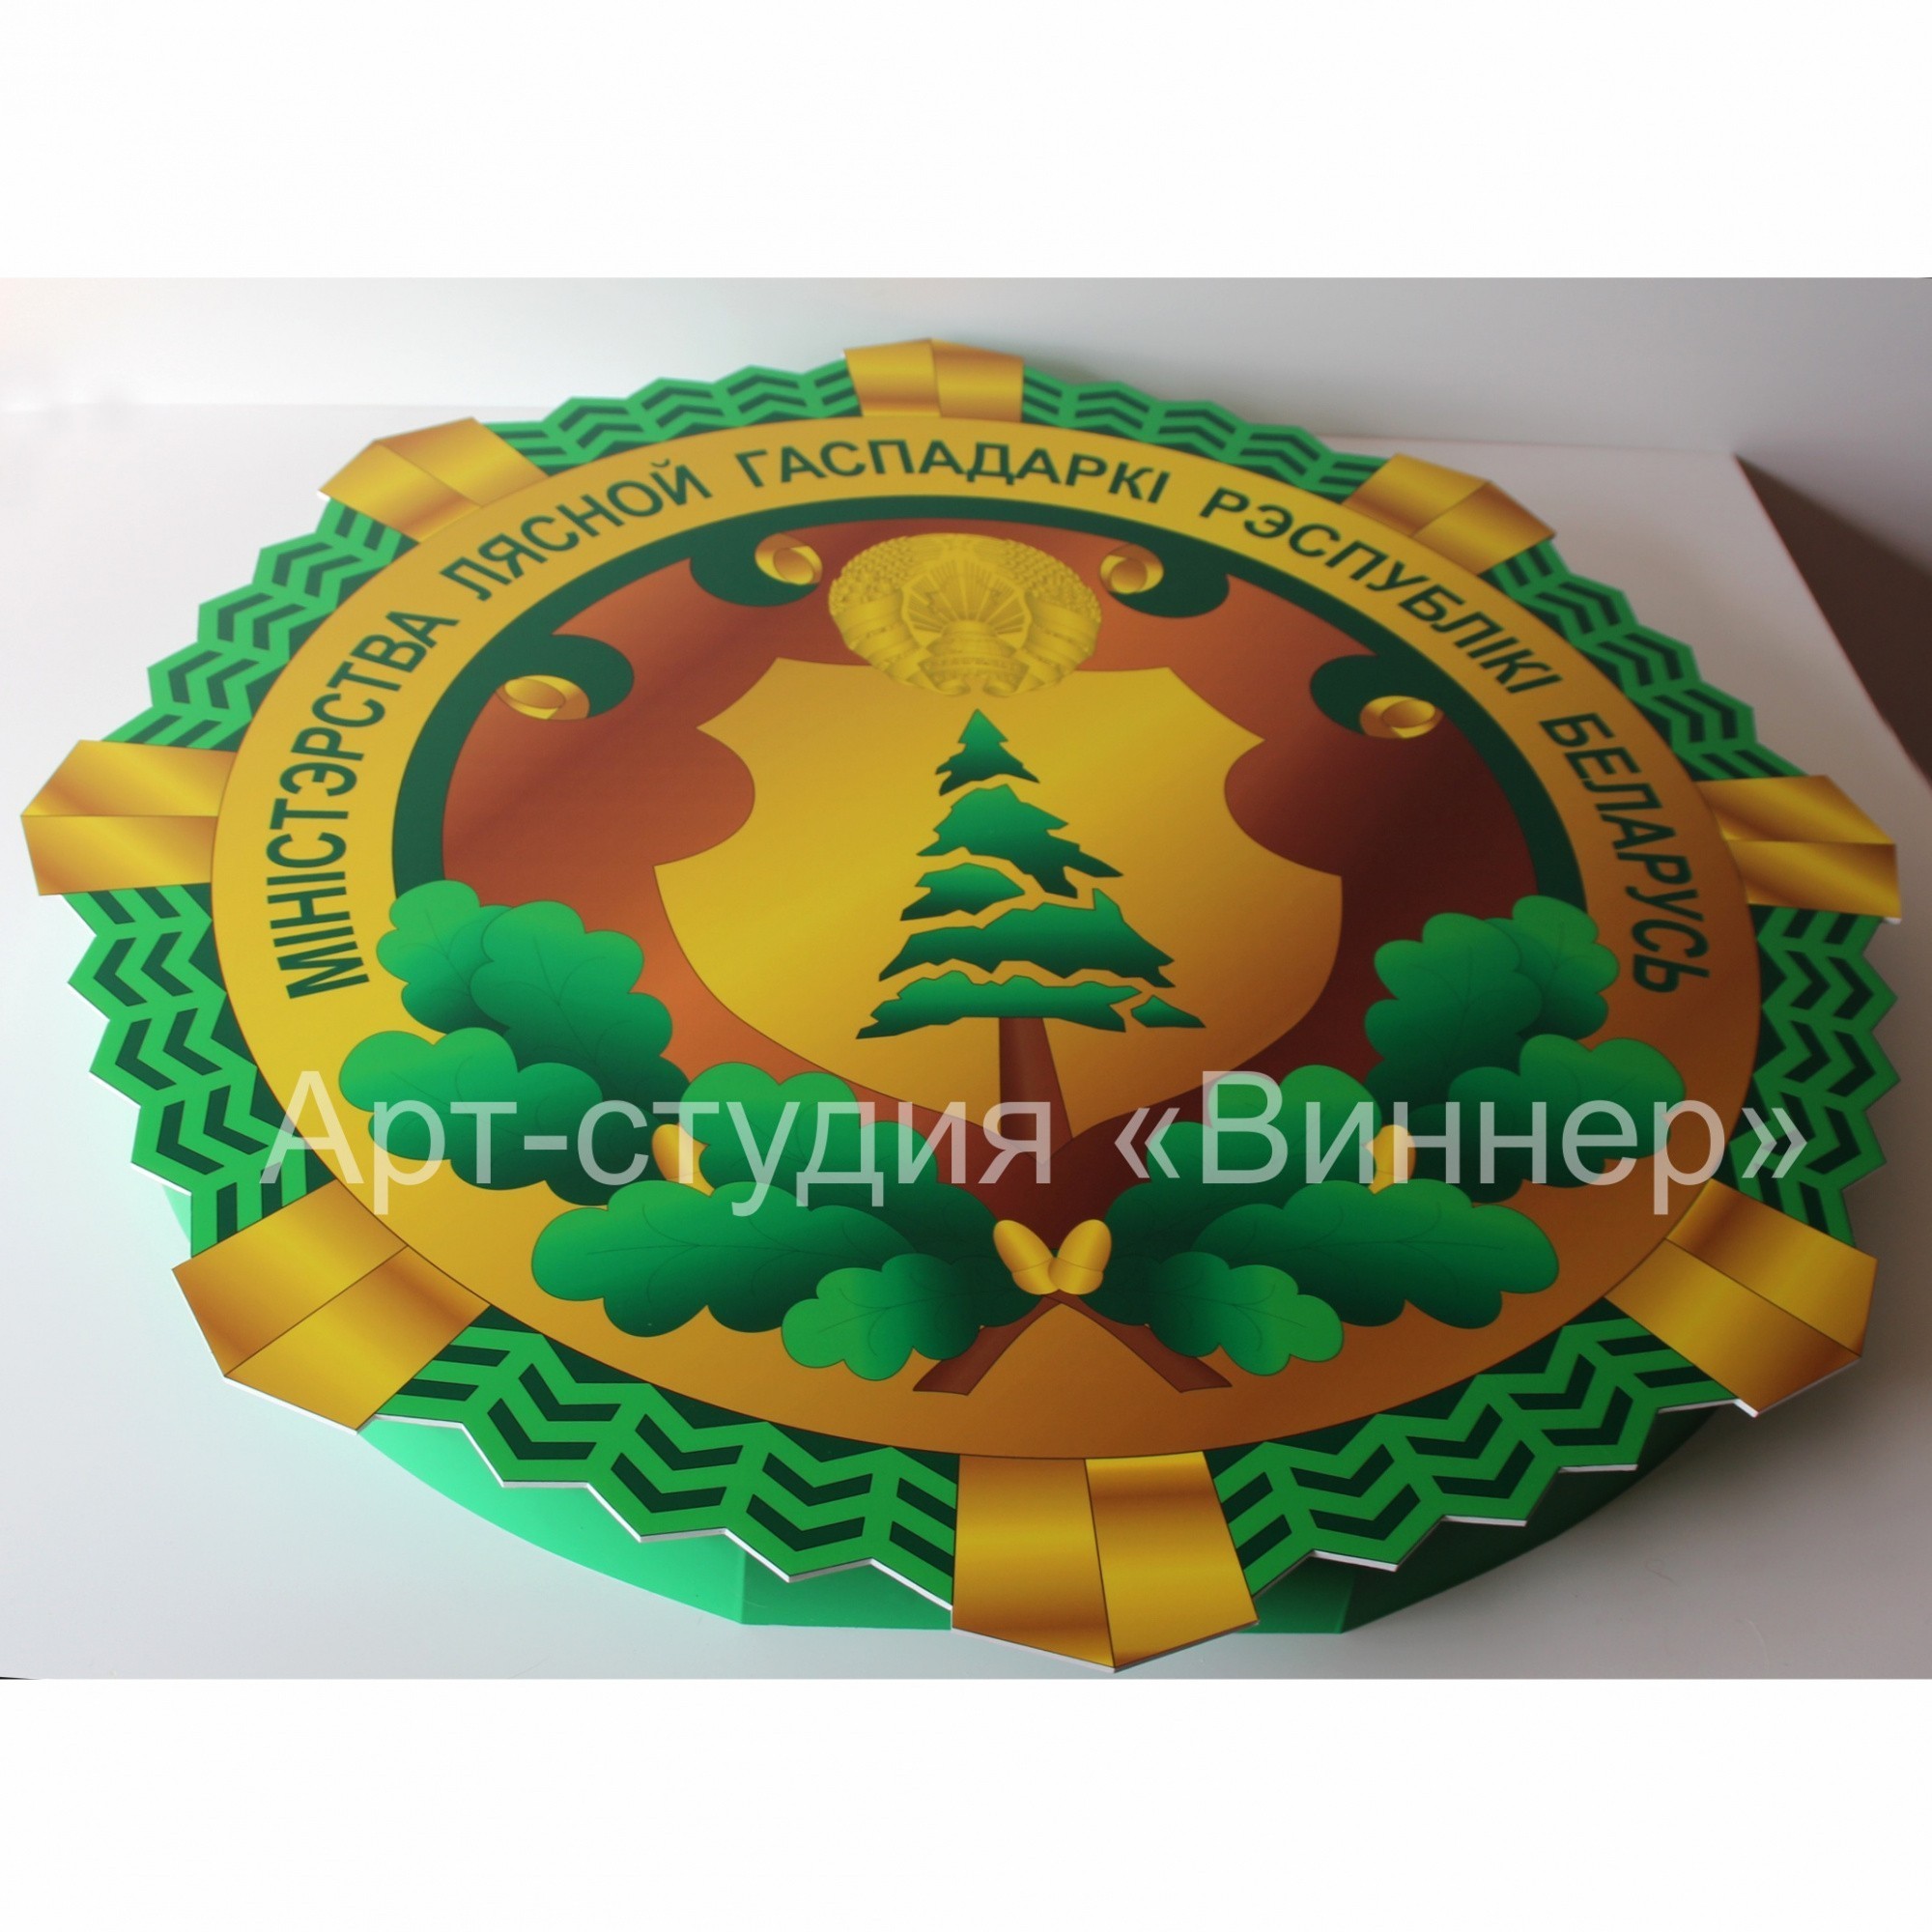 Логотип Министерства лесного хозяйства Республики Беларусь- фото3